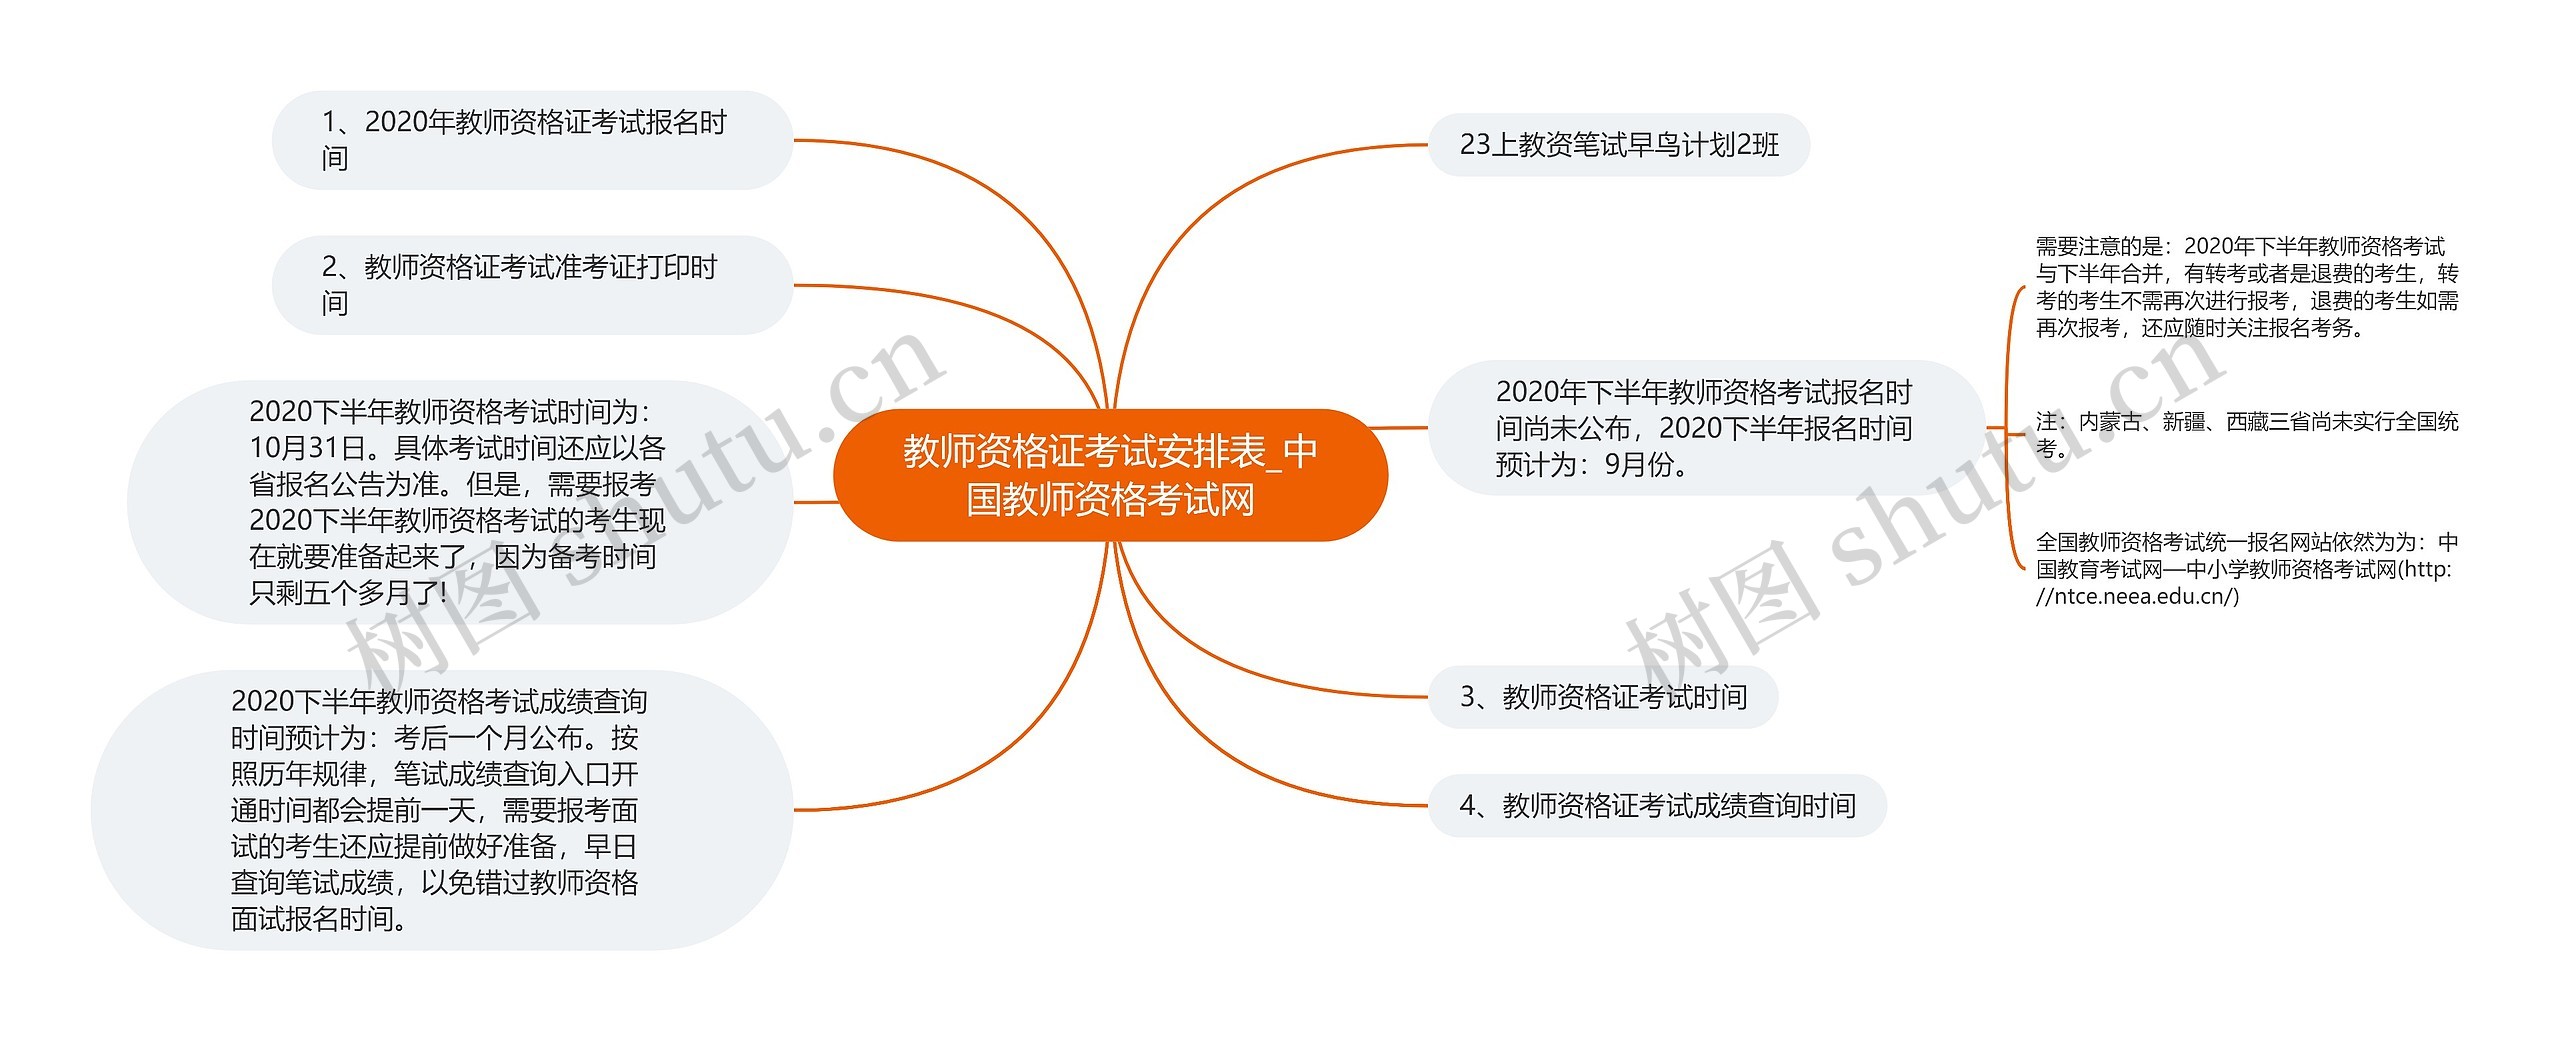 教师资格证考试安排表_中国教师资格考试网